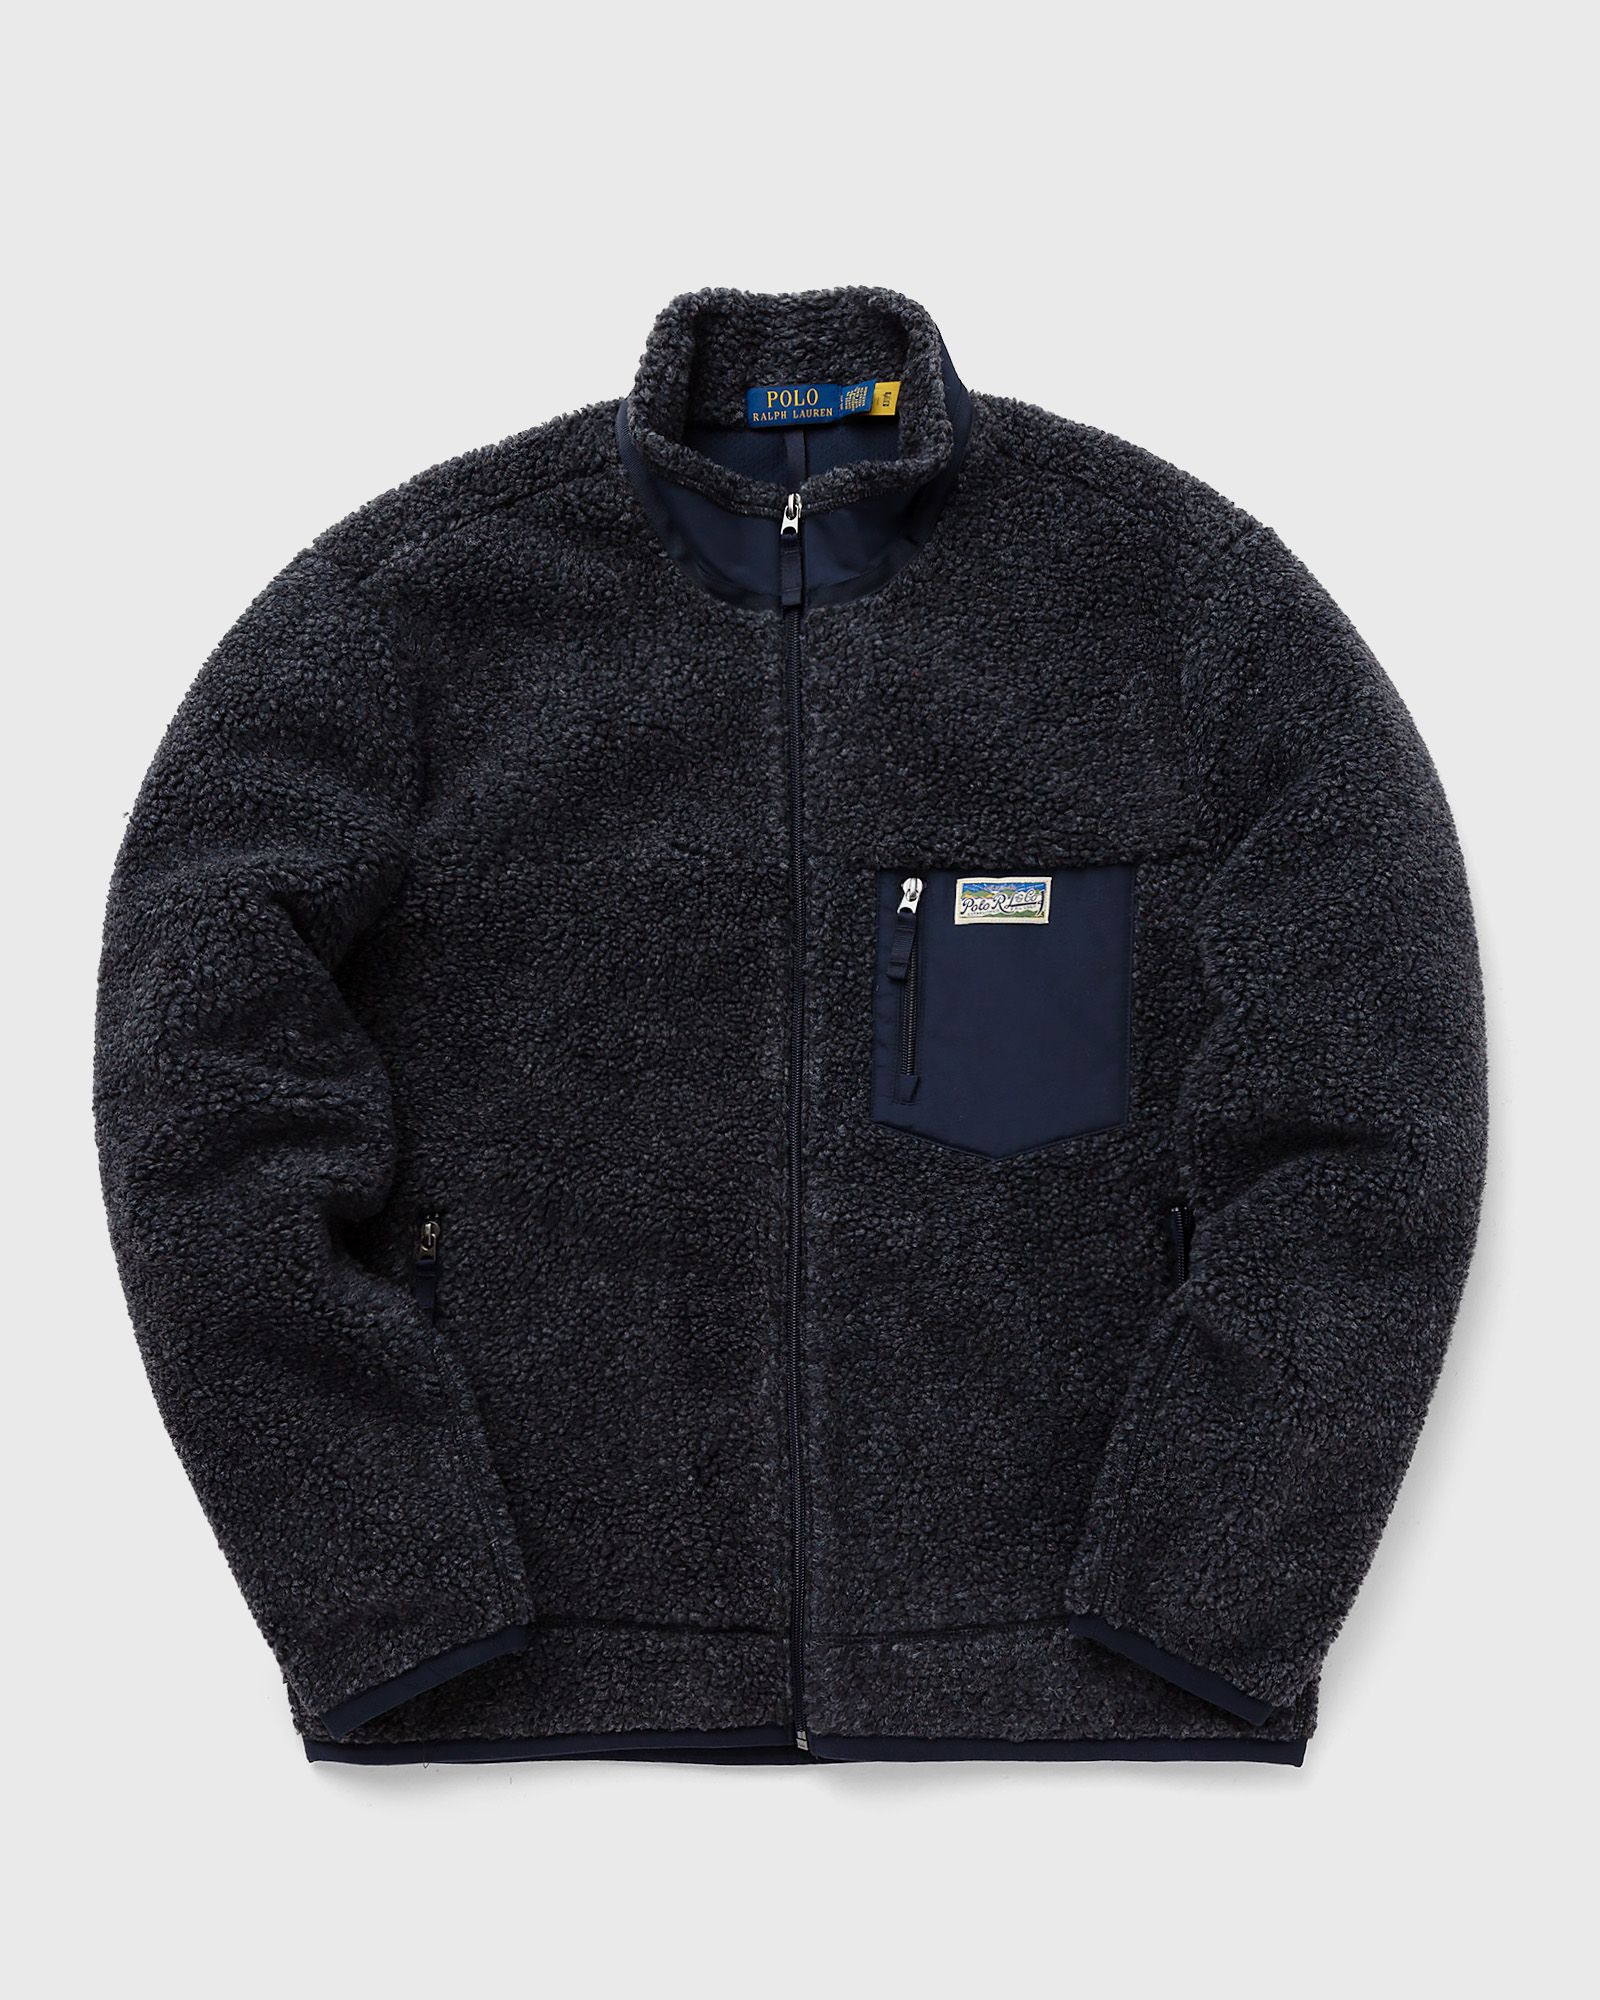 Polo Ralph Lauren - long sleeve-sweatshirt men fleece jackets blue in größe:xl